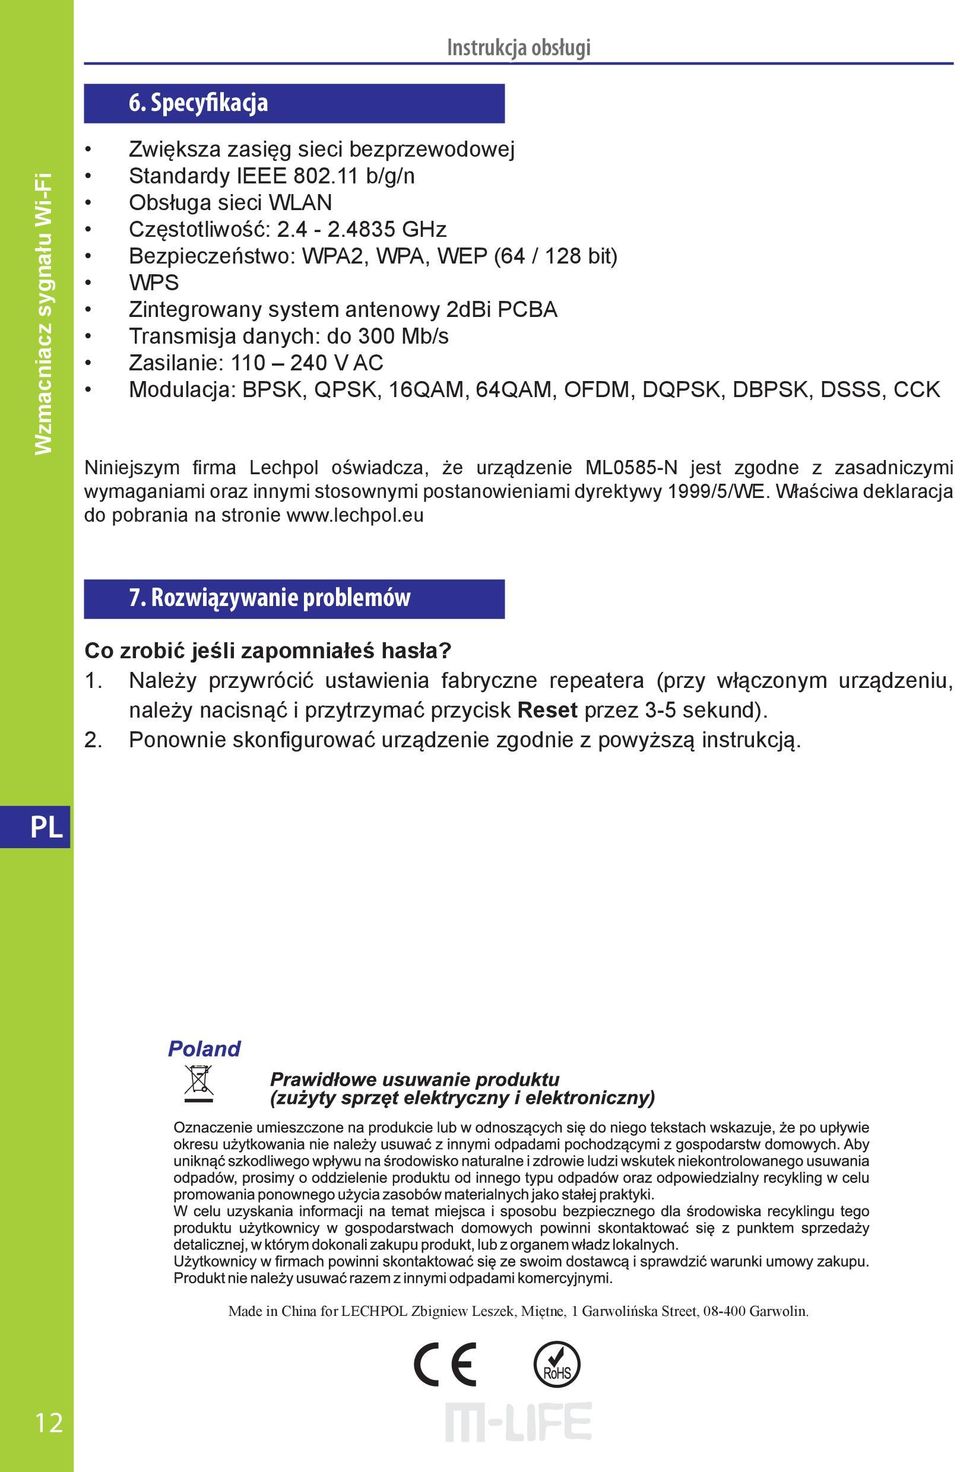 DQPSK, DBPSK, DSSS, CCK Niniejszym firma Lechpol oświadcza, że urządzenie ML0585-N jest zgodne z zasadniczymi wymaganiami oraz innymi stosownymi postanowieniami dyrektywy 1999/5/WE.